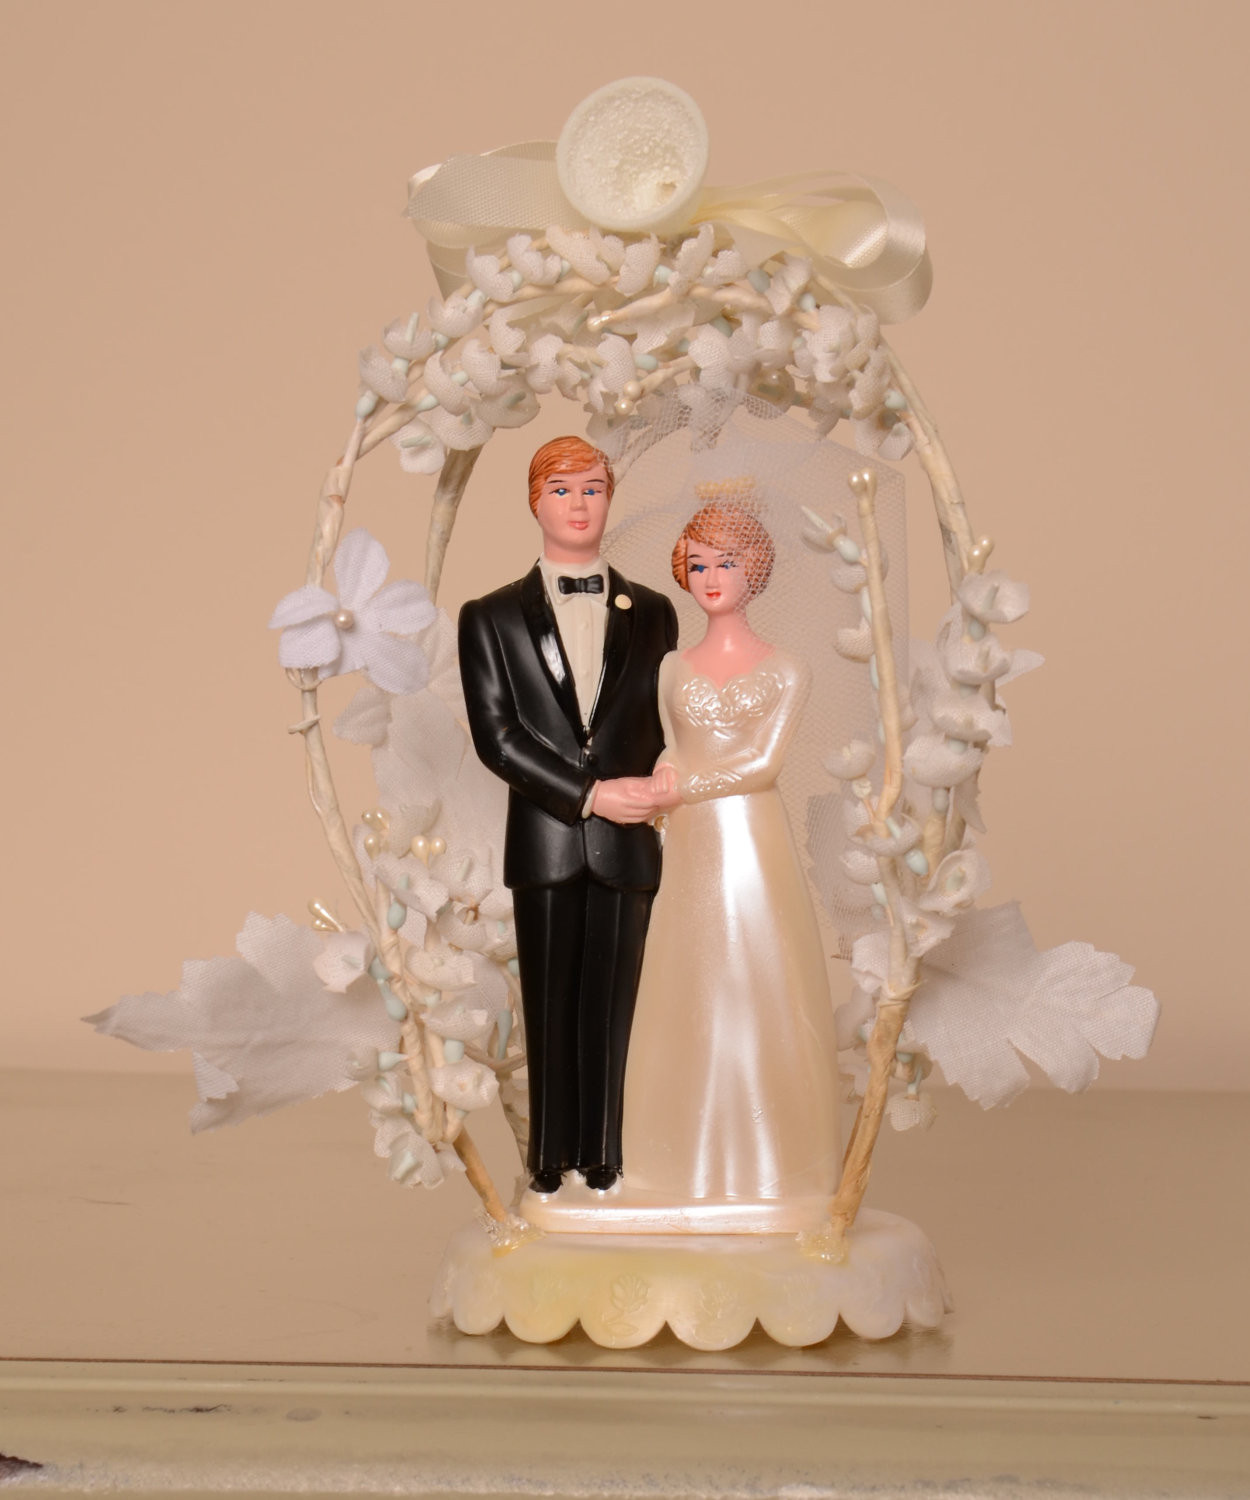 Vintage Wedding Cake Toppers
 Vintage Bride & Groom Wedding Cake Topper